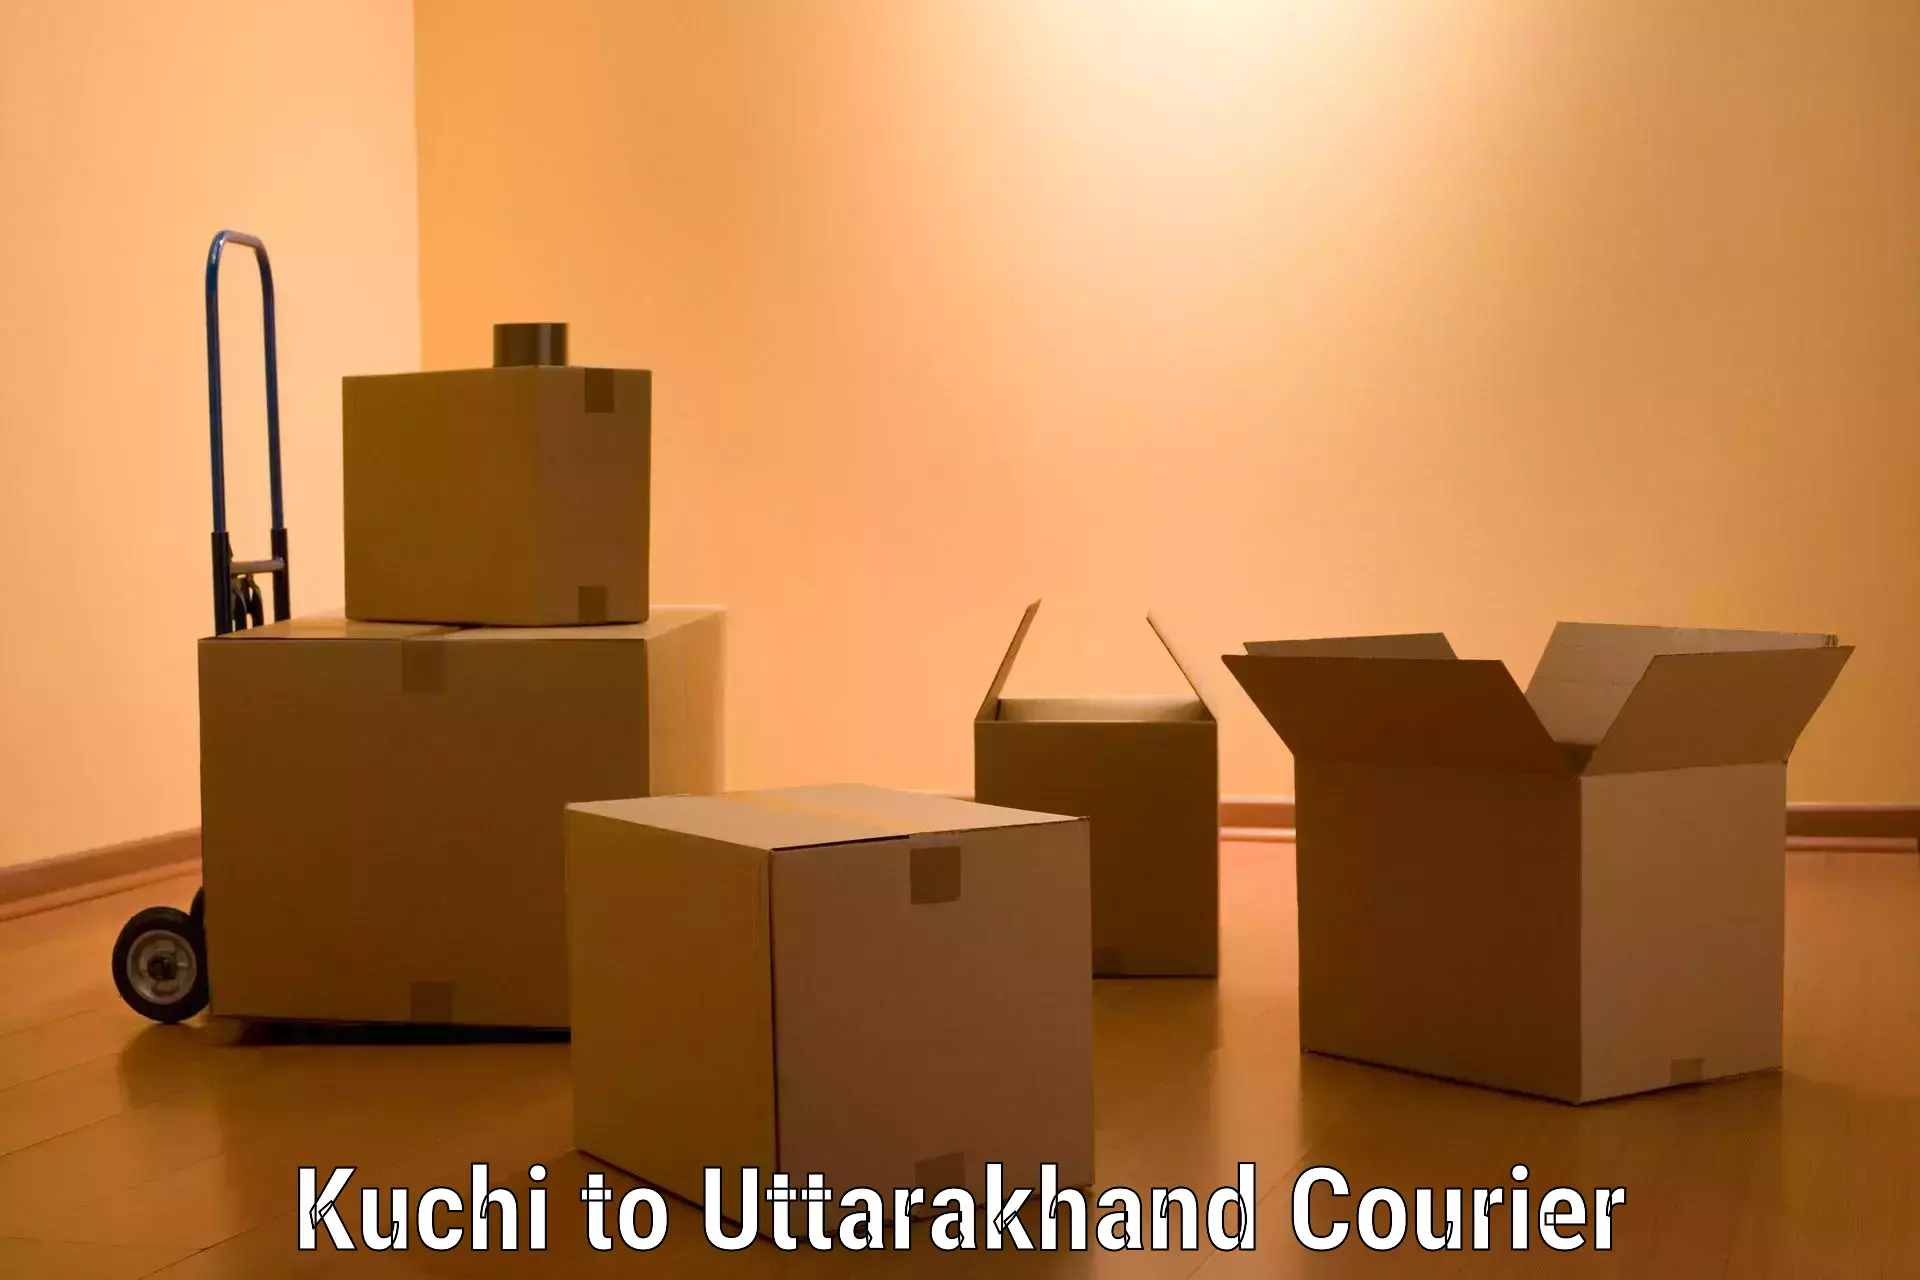 Professional moving company Kuchi to Uttarakhand